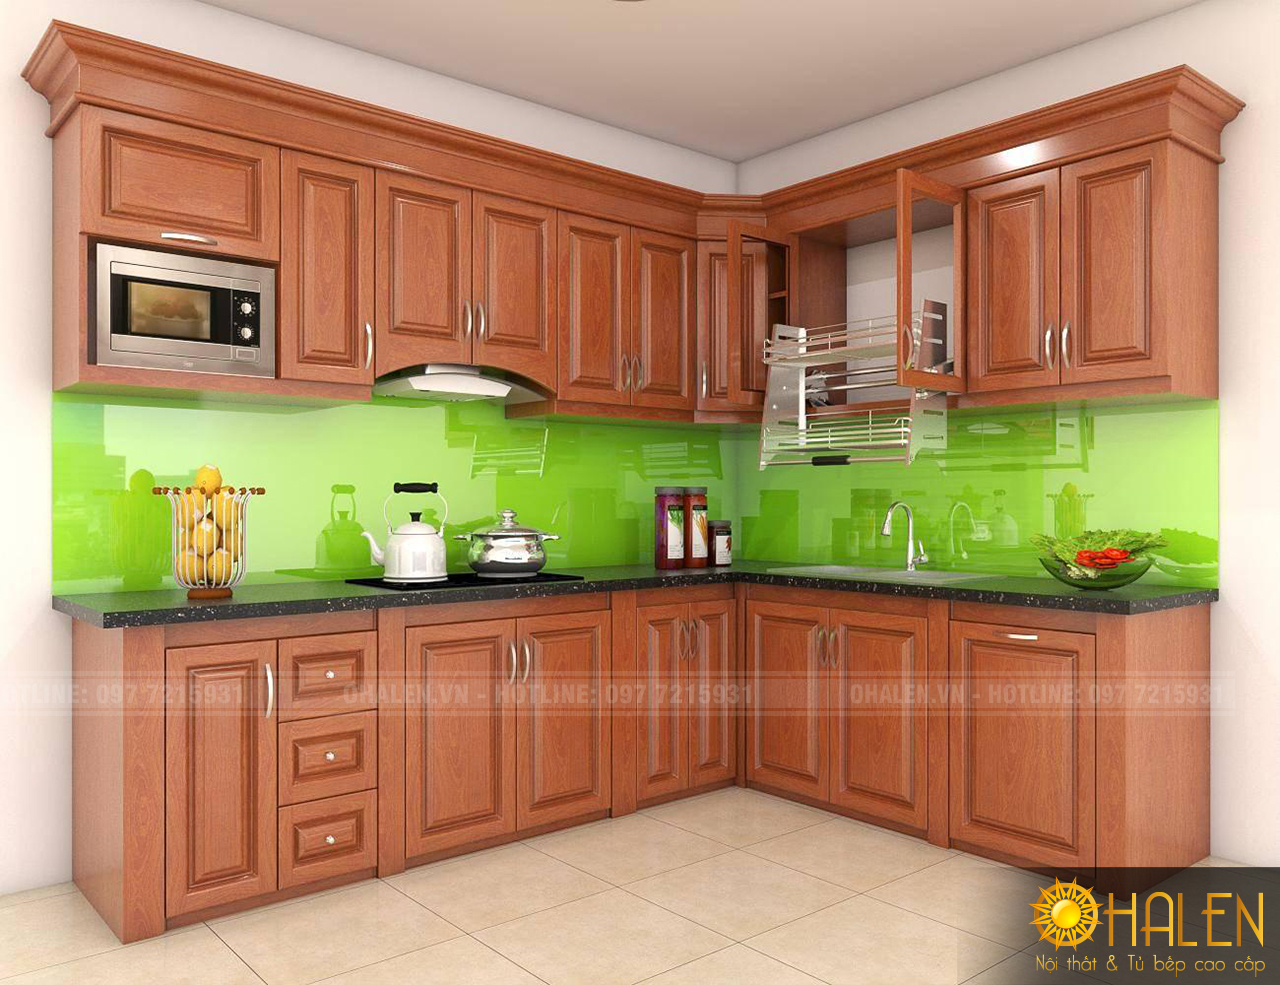 Tủ bếp kính màu xanh hiện nay rất được ưa chuộng vì mang đến không gian bếp tươi mới